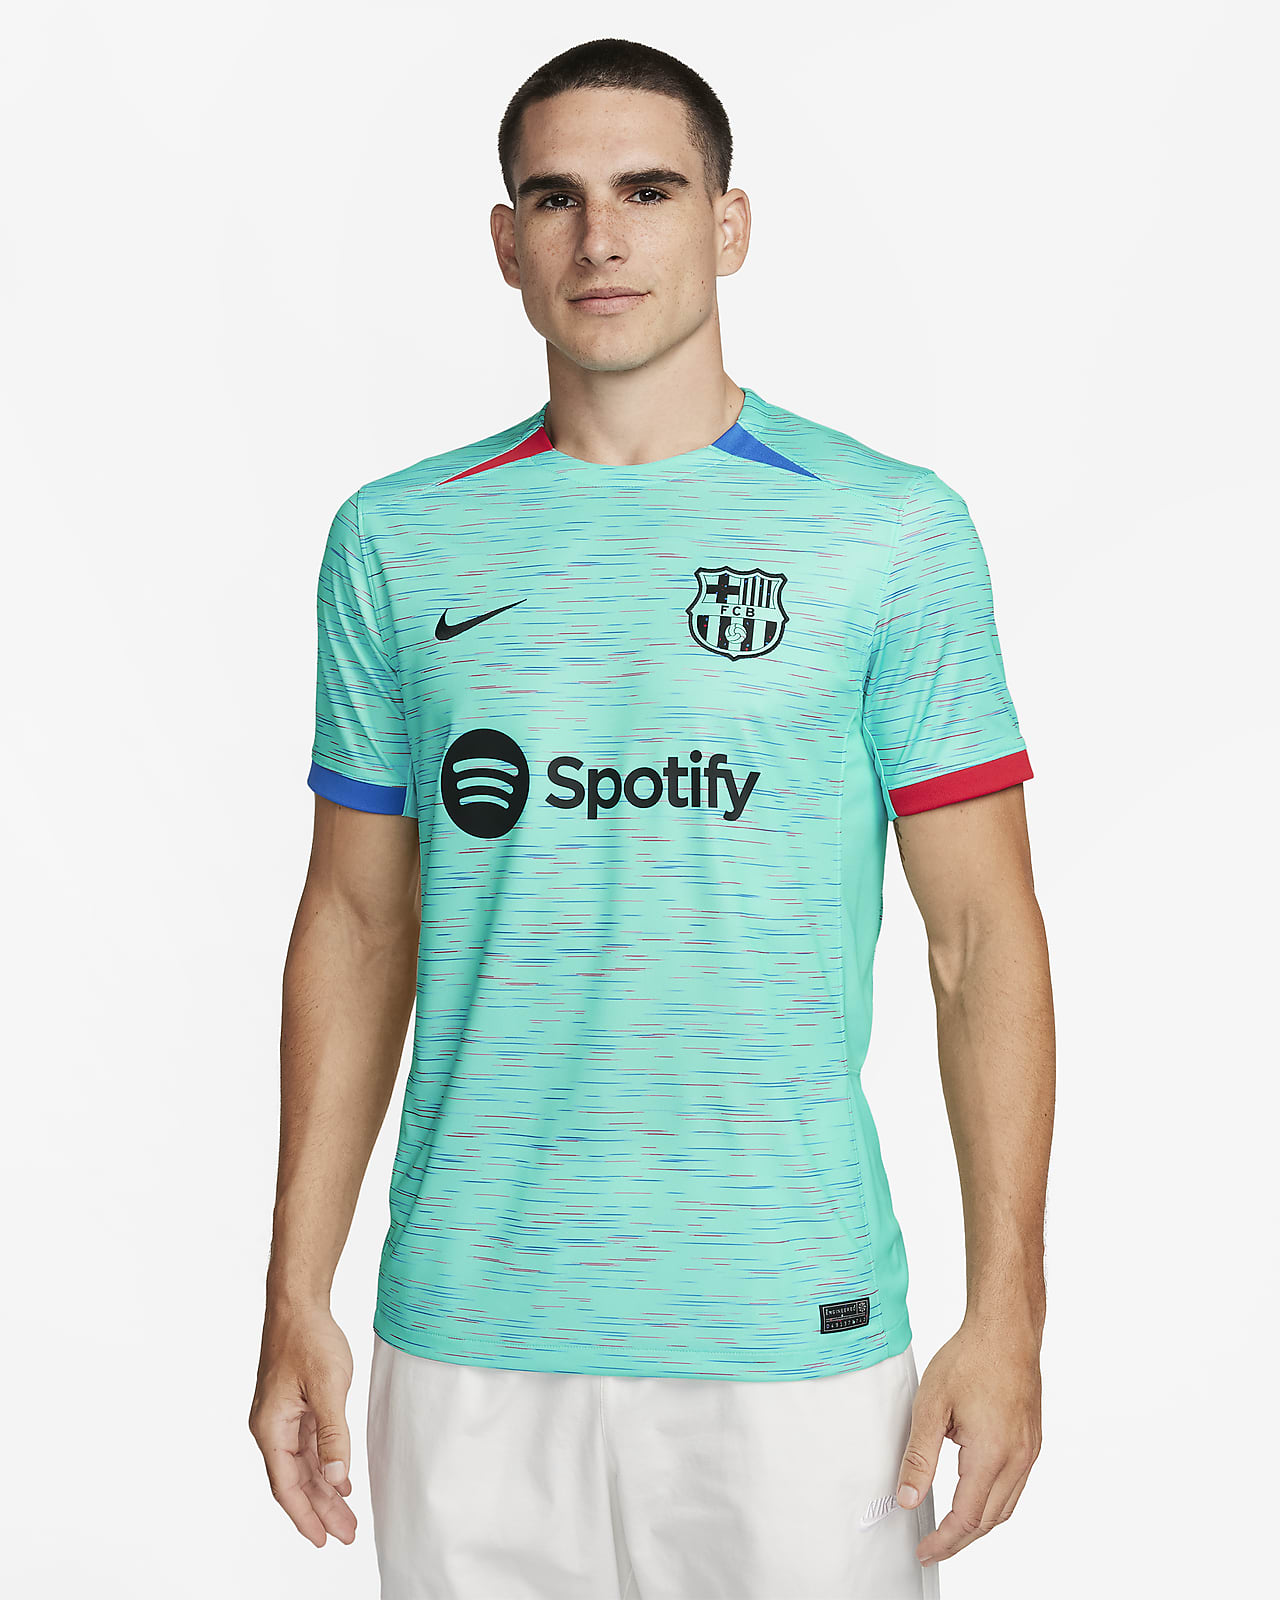 Nike retira la nueva camiseta del Barcelona porque destiñe